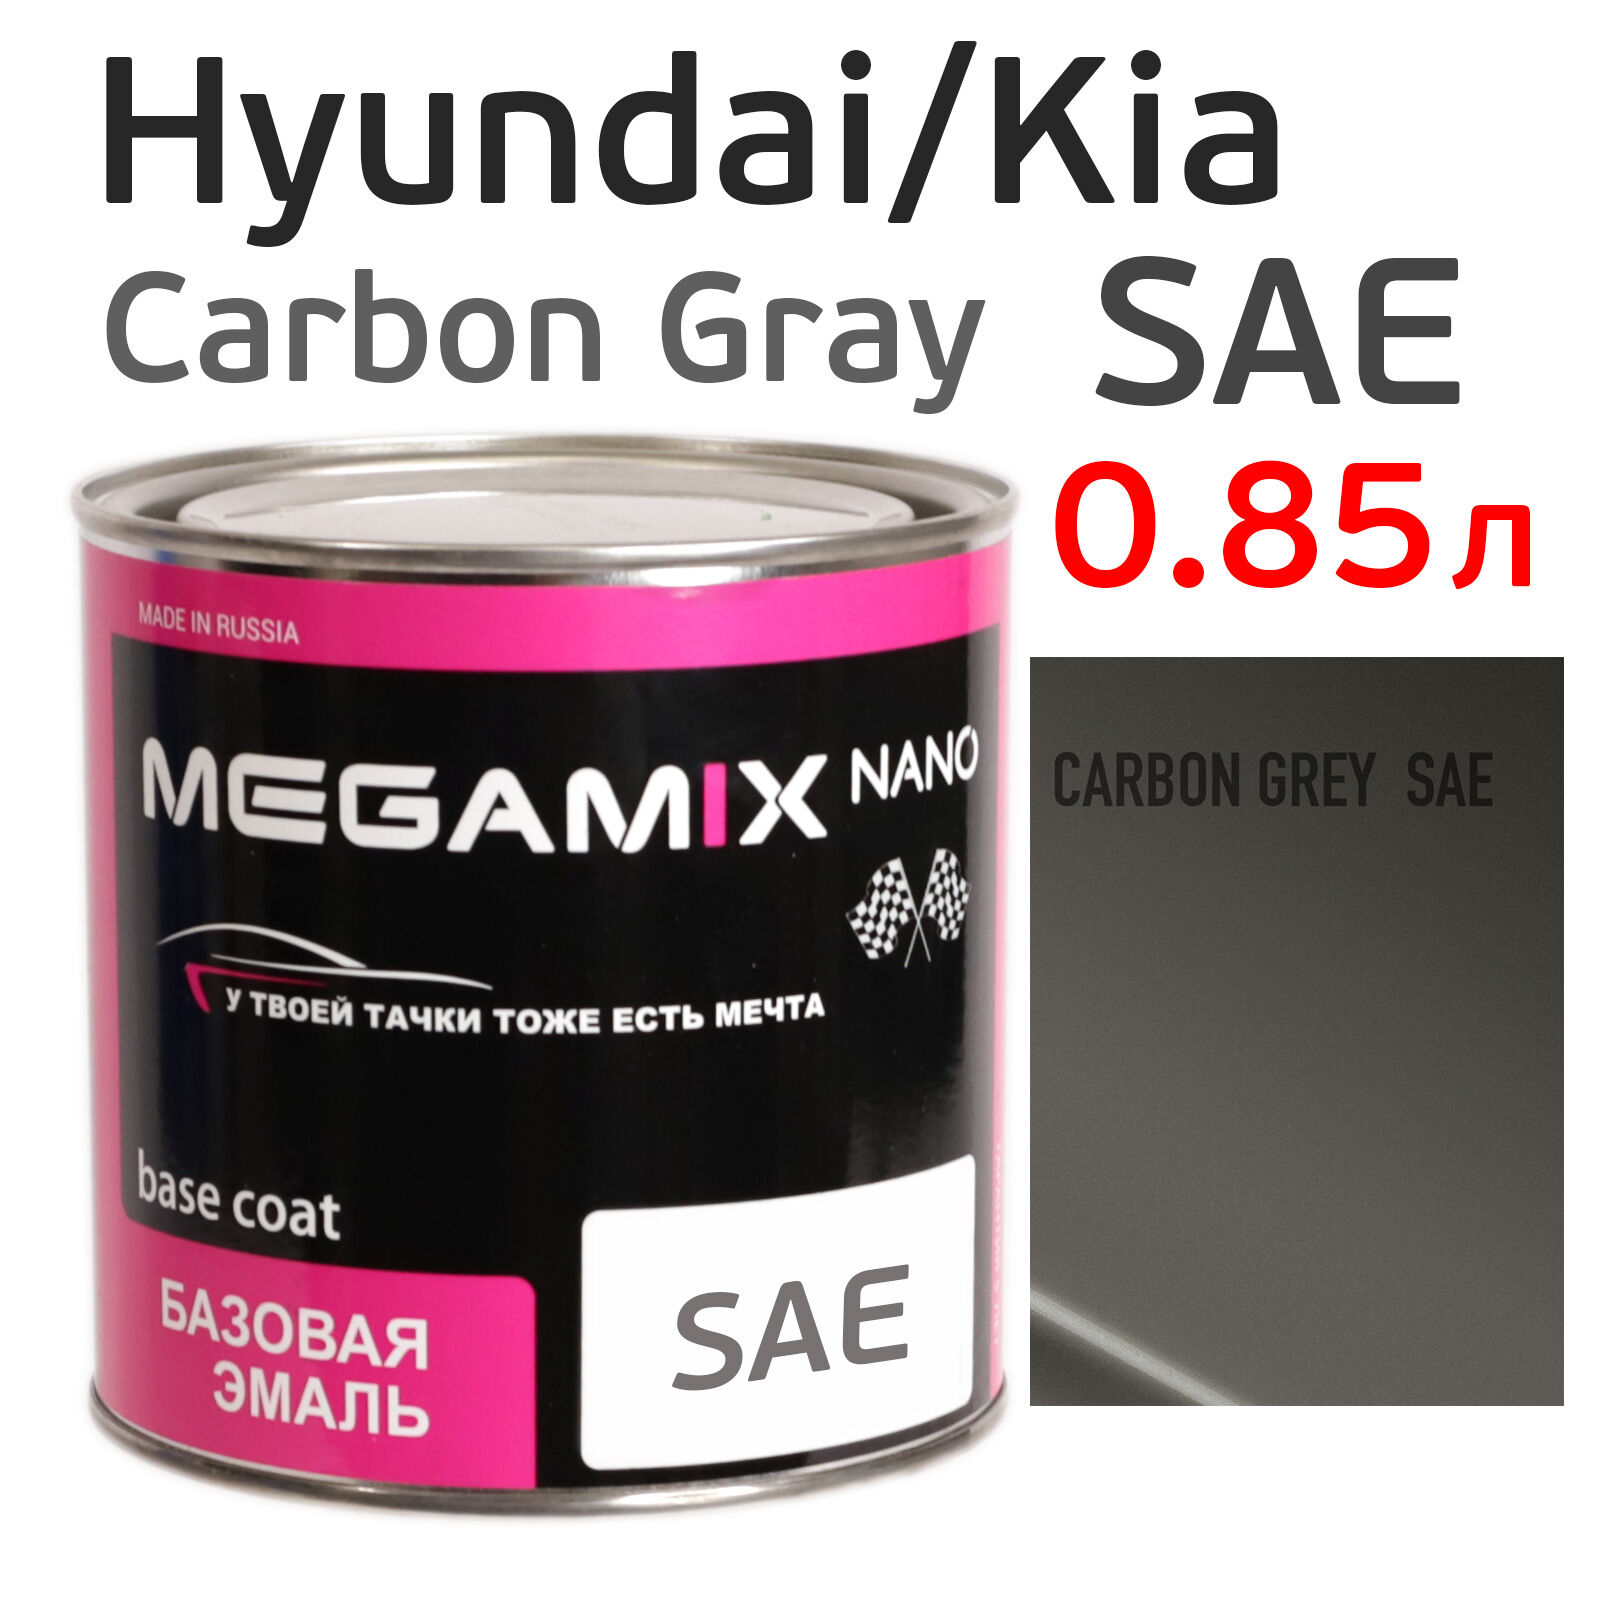 Автоэмаль MegaMIX (0.85л) Hyundai/Kia SAE Carbon Gray, металлик, базисная эмаль под лак